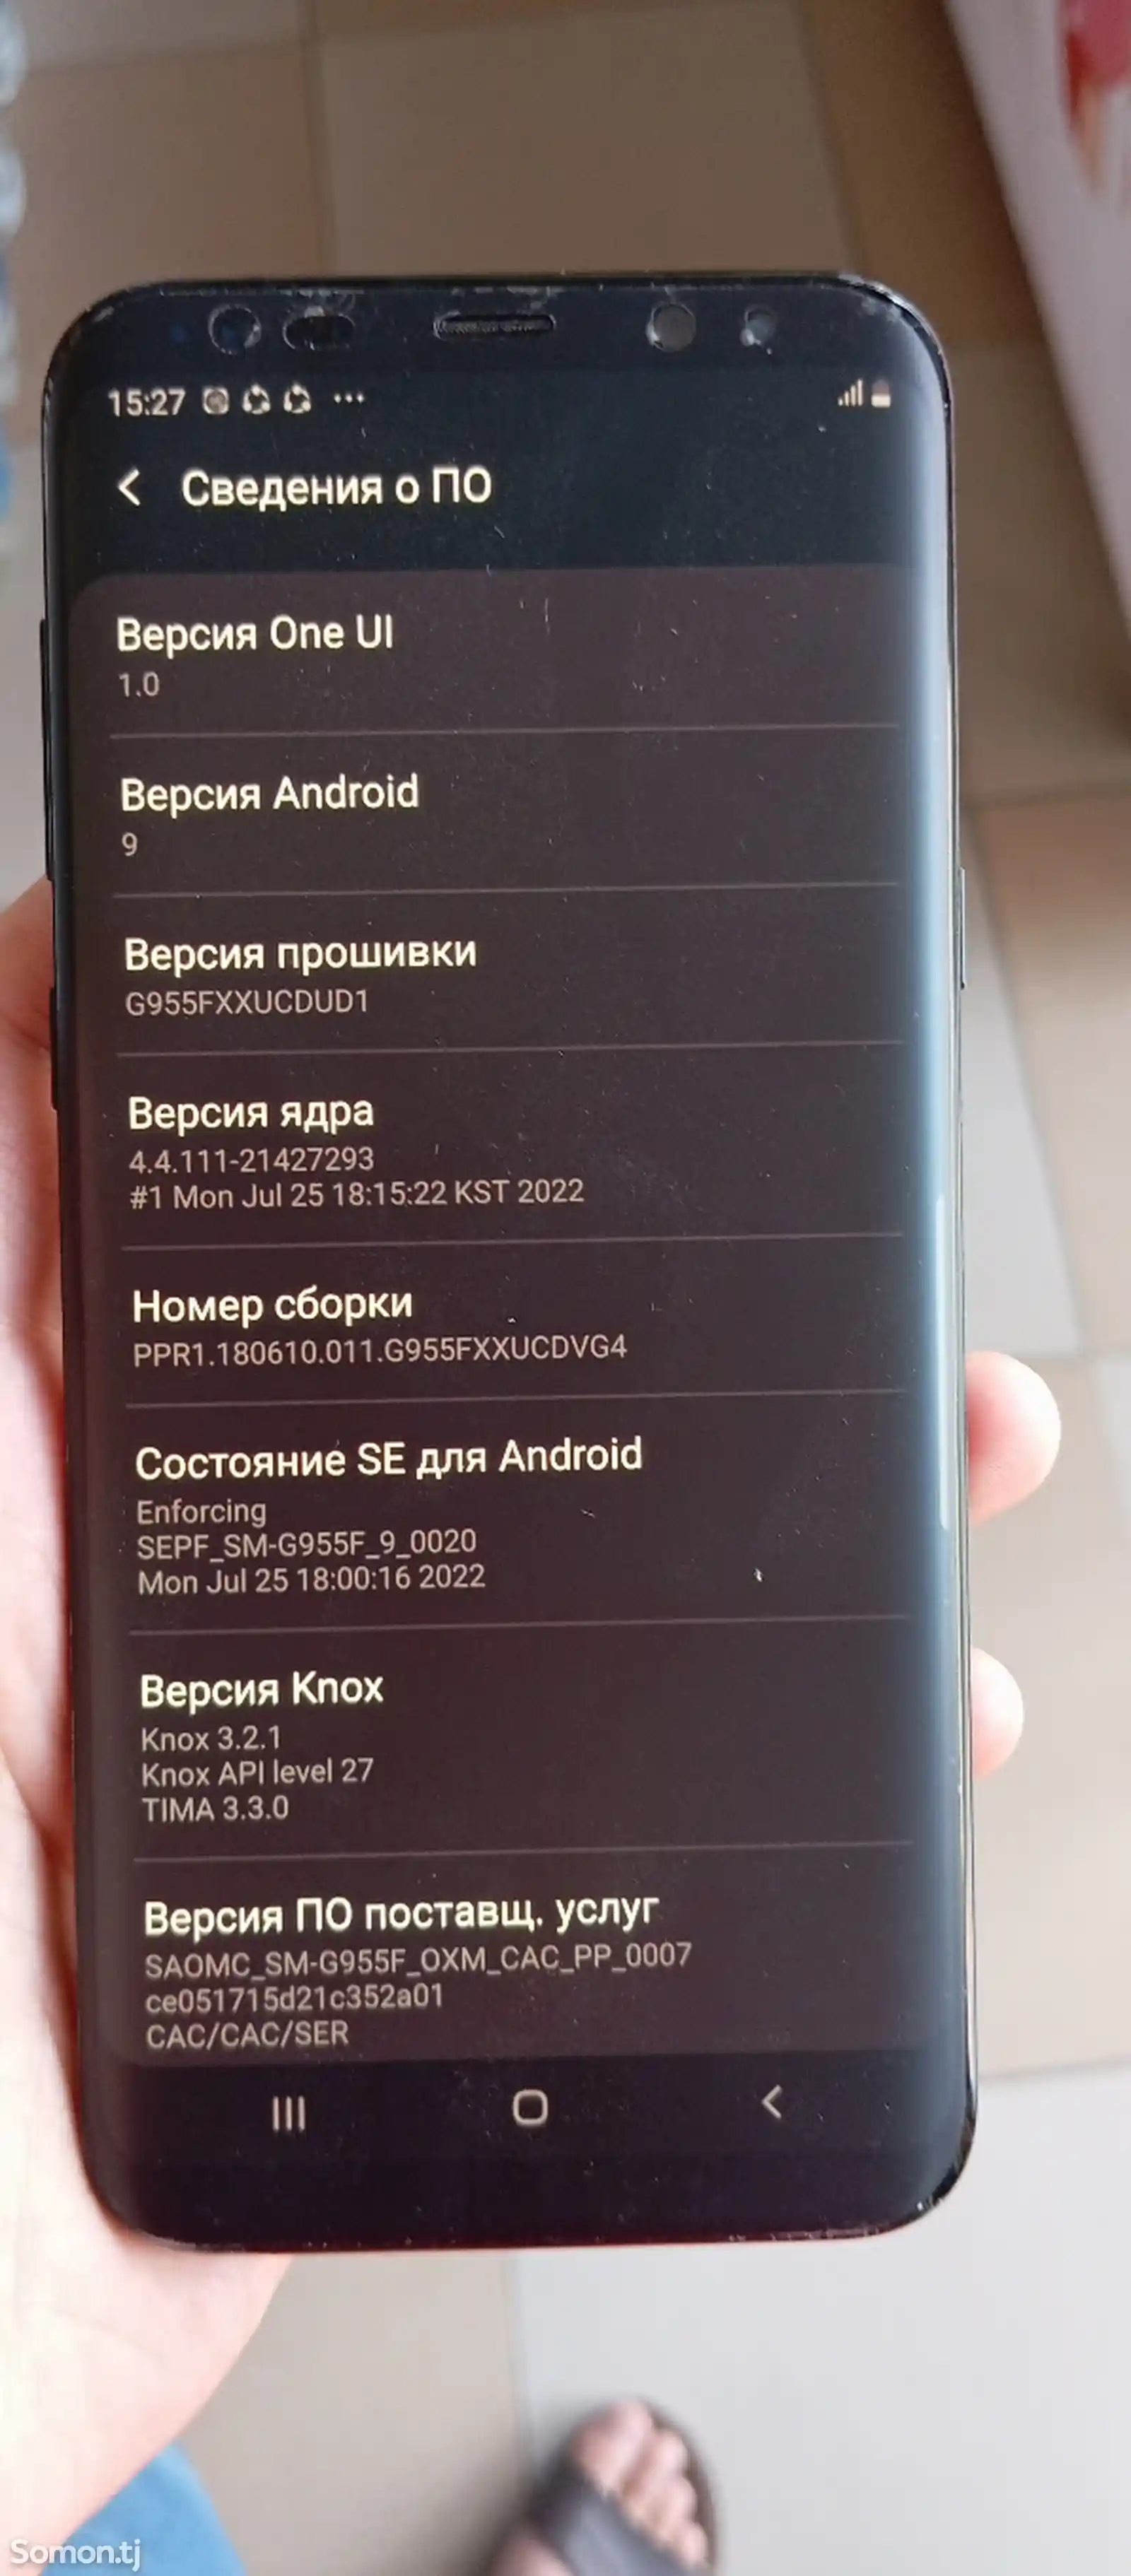 Samsung Galaxy S8-2